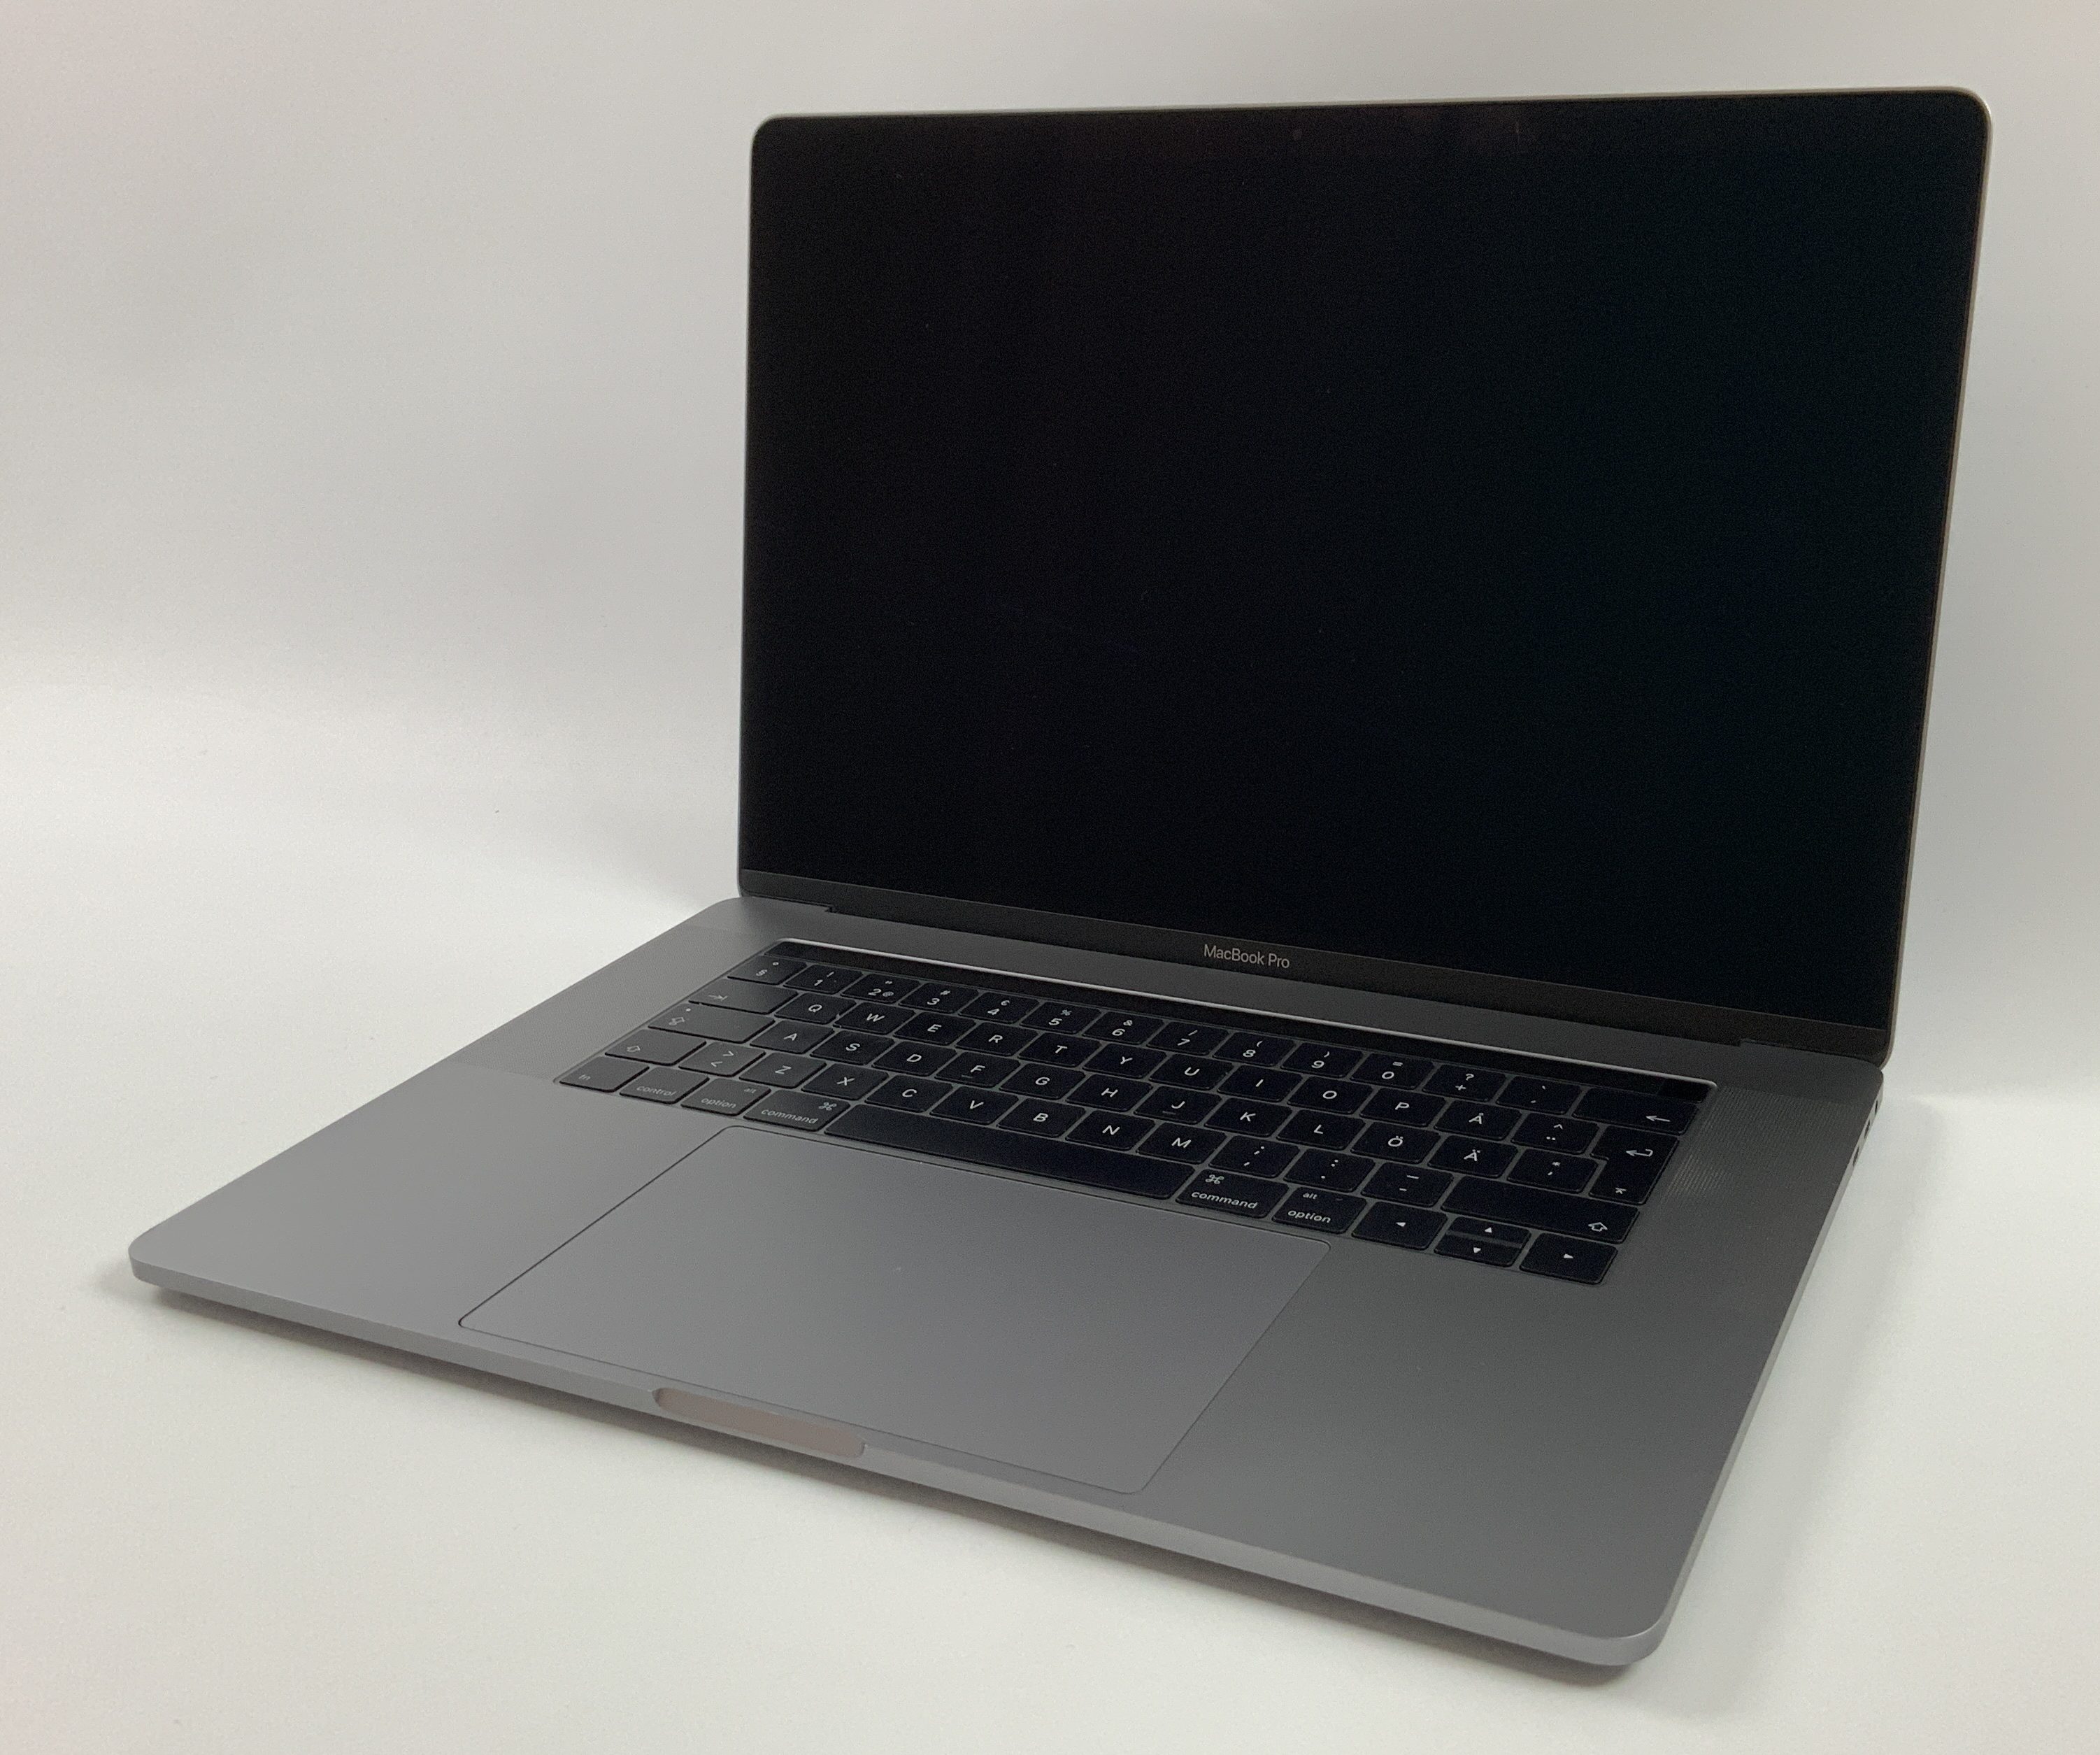 MacBook Pro 15" Touch Bar Late 2016 (Intel Quad-Core i7 2.6 GHz 16 GB RAM 256 GB SSD), Space Gray, Intel Quad-Core i7 2.6 GHz, 16 GB RAM, 256 GB SSD, bild 1